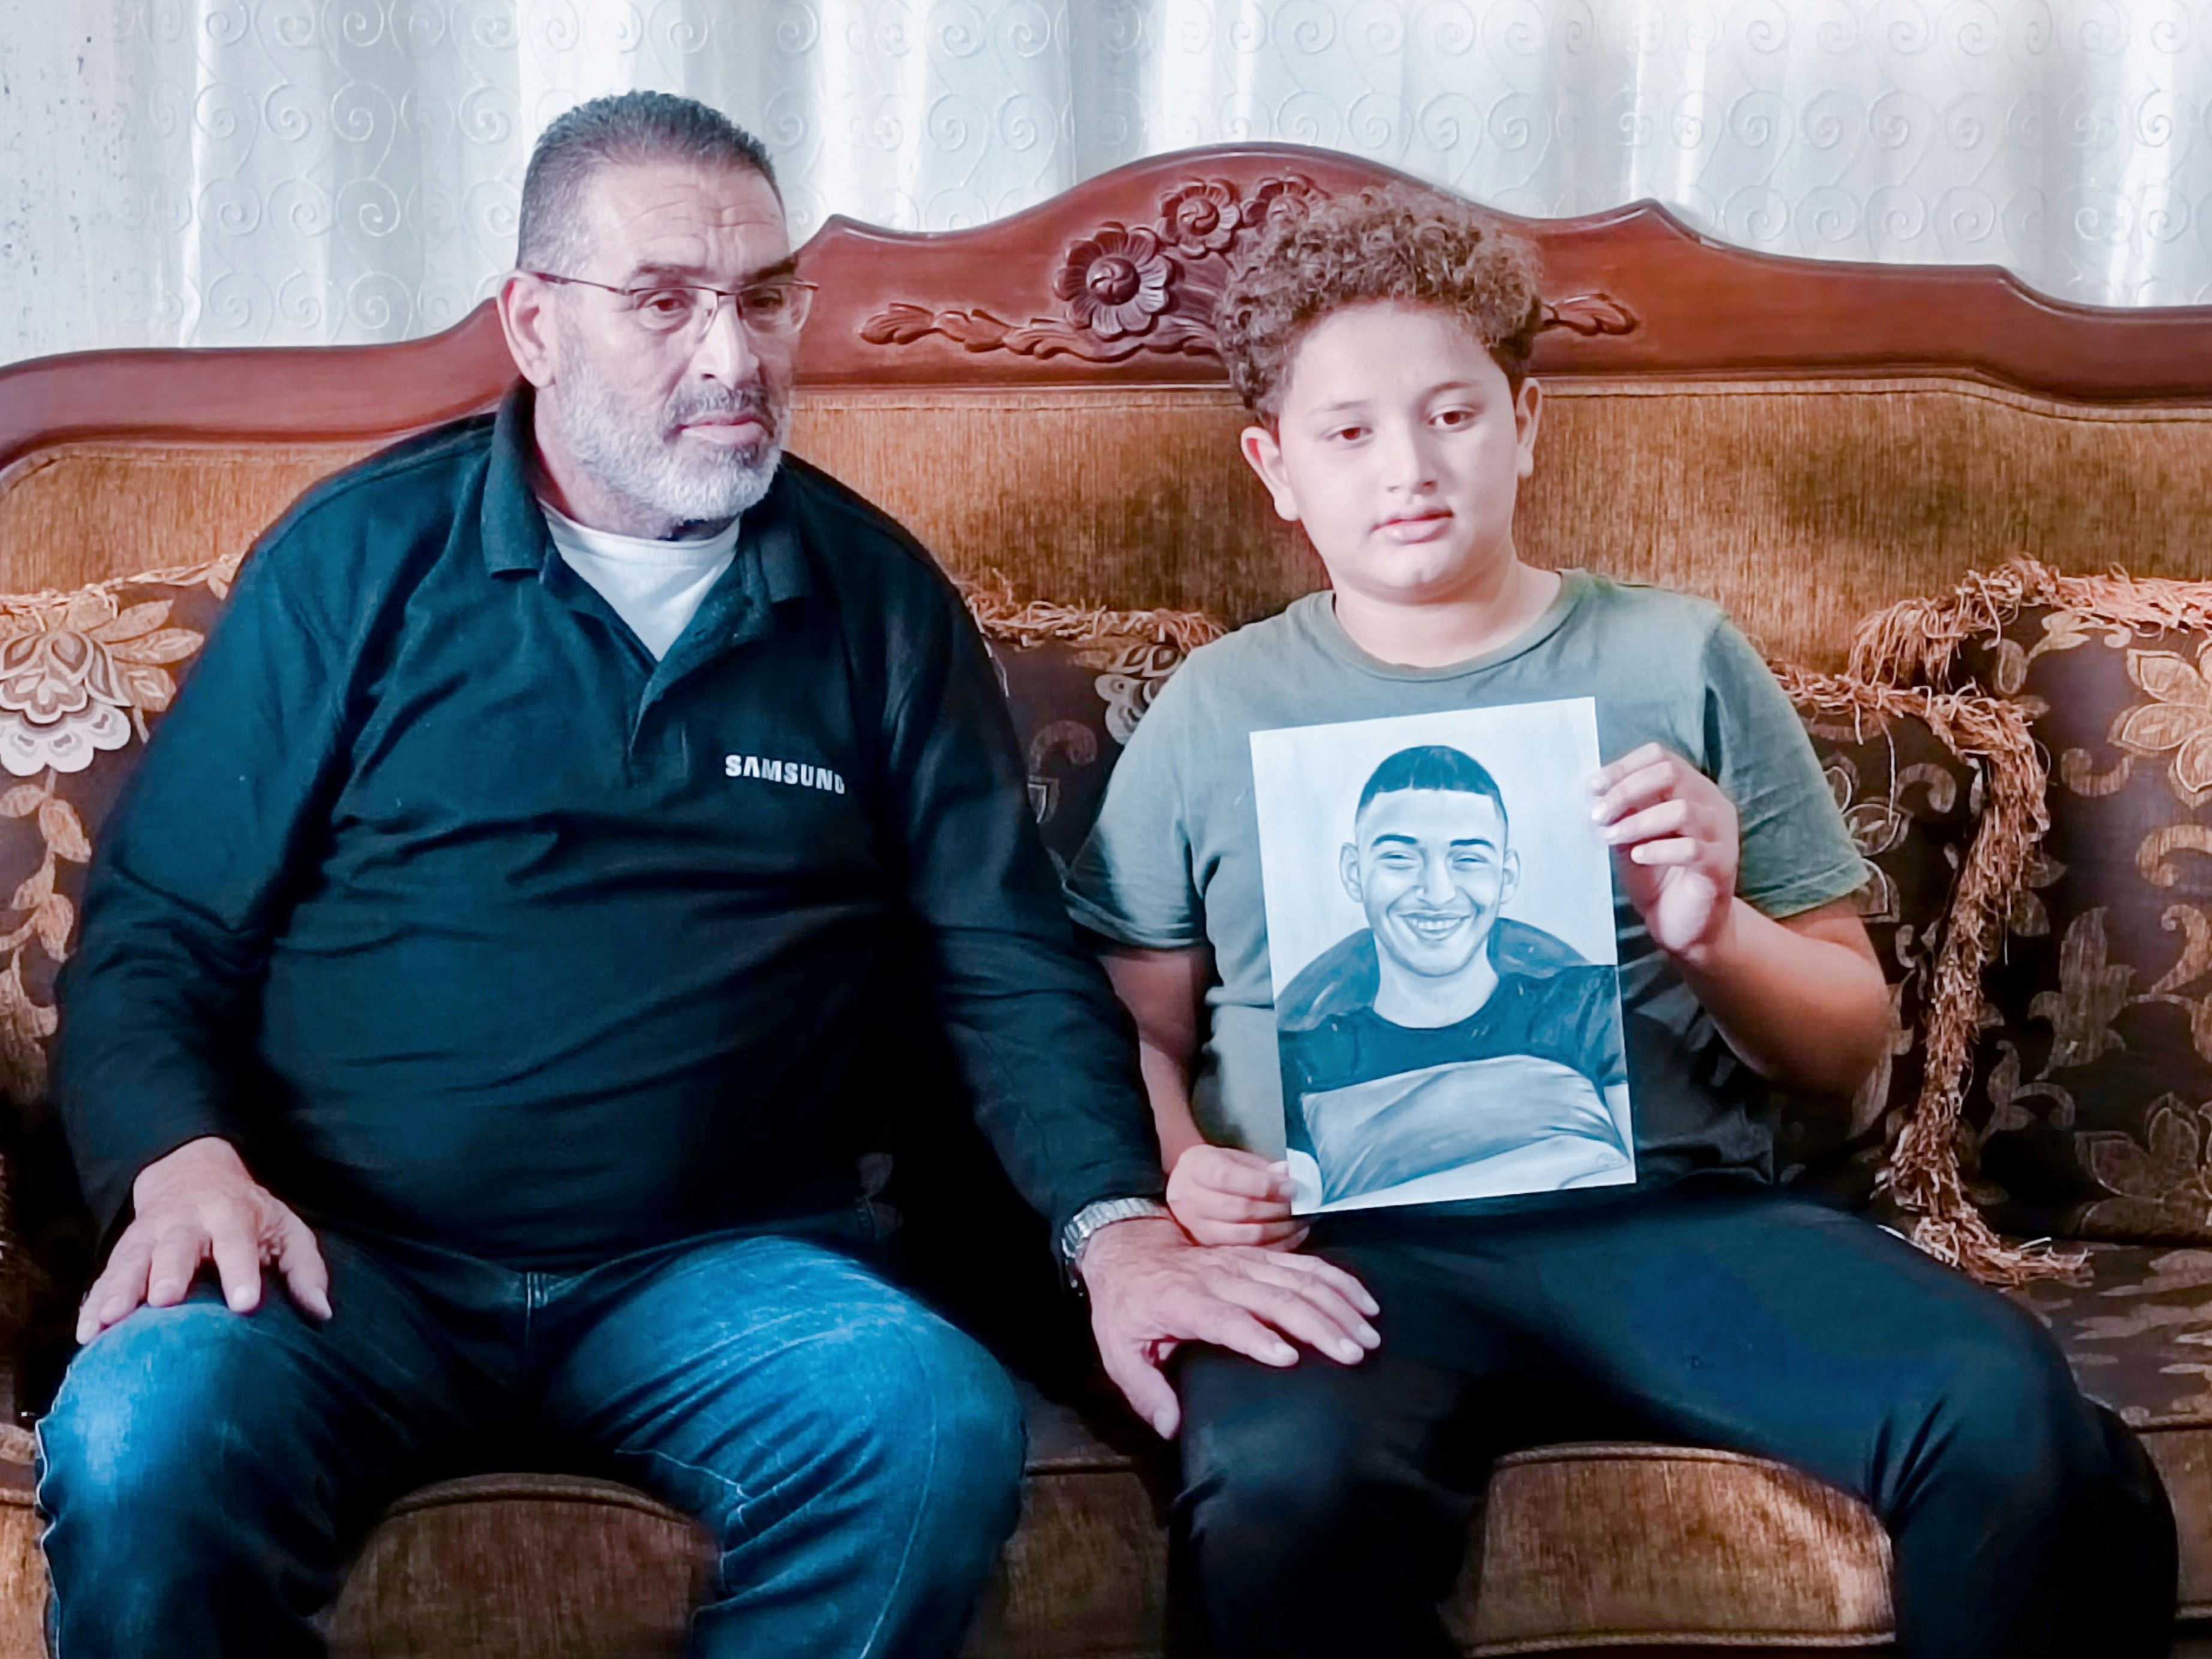 Mohammad con il figlio Ibrahim, mostrano il ritratto di Jamal, ucciso a 15 anni